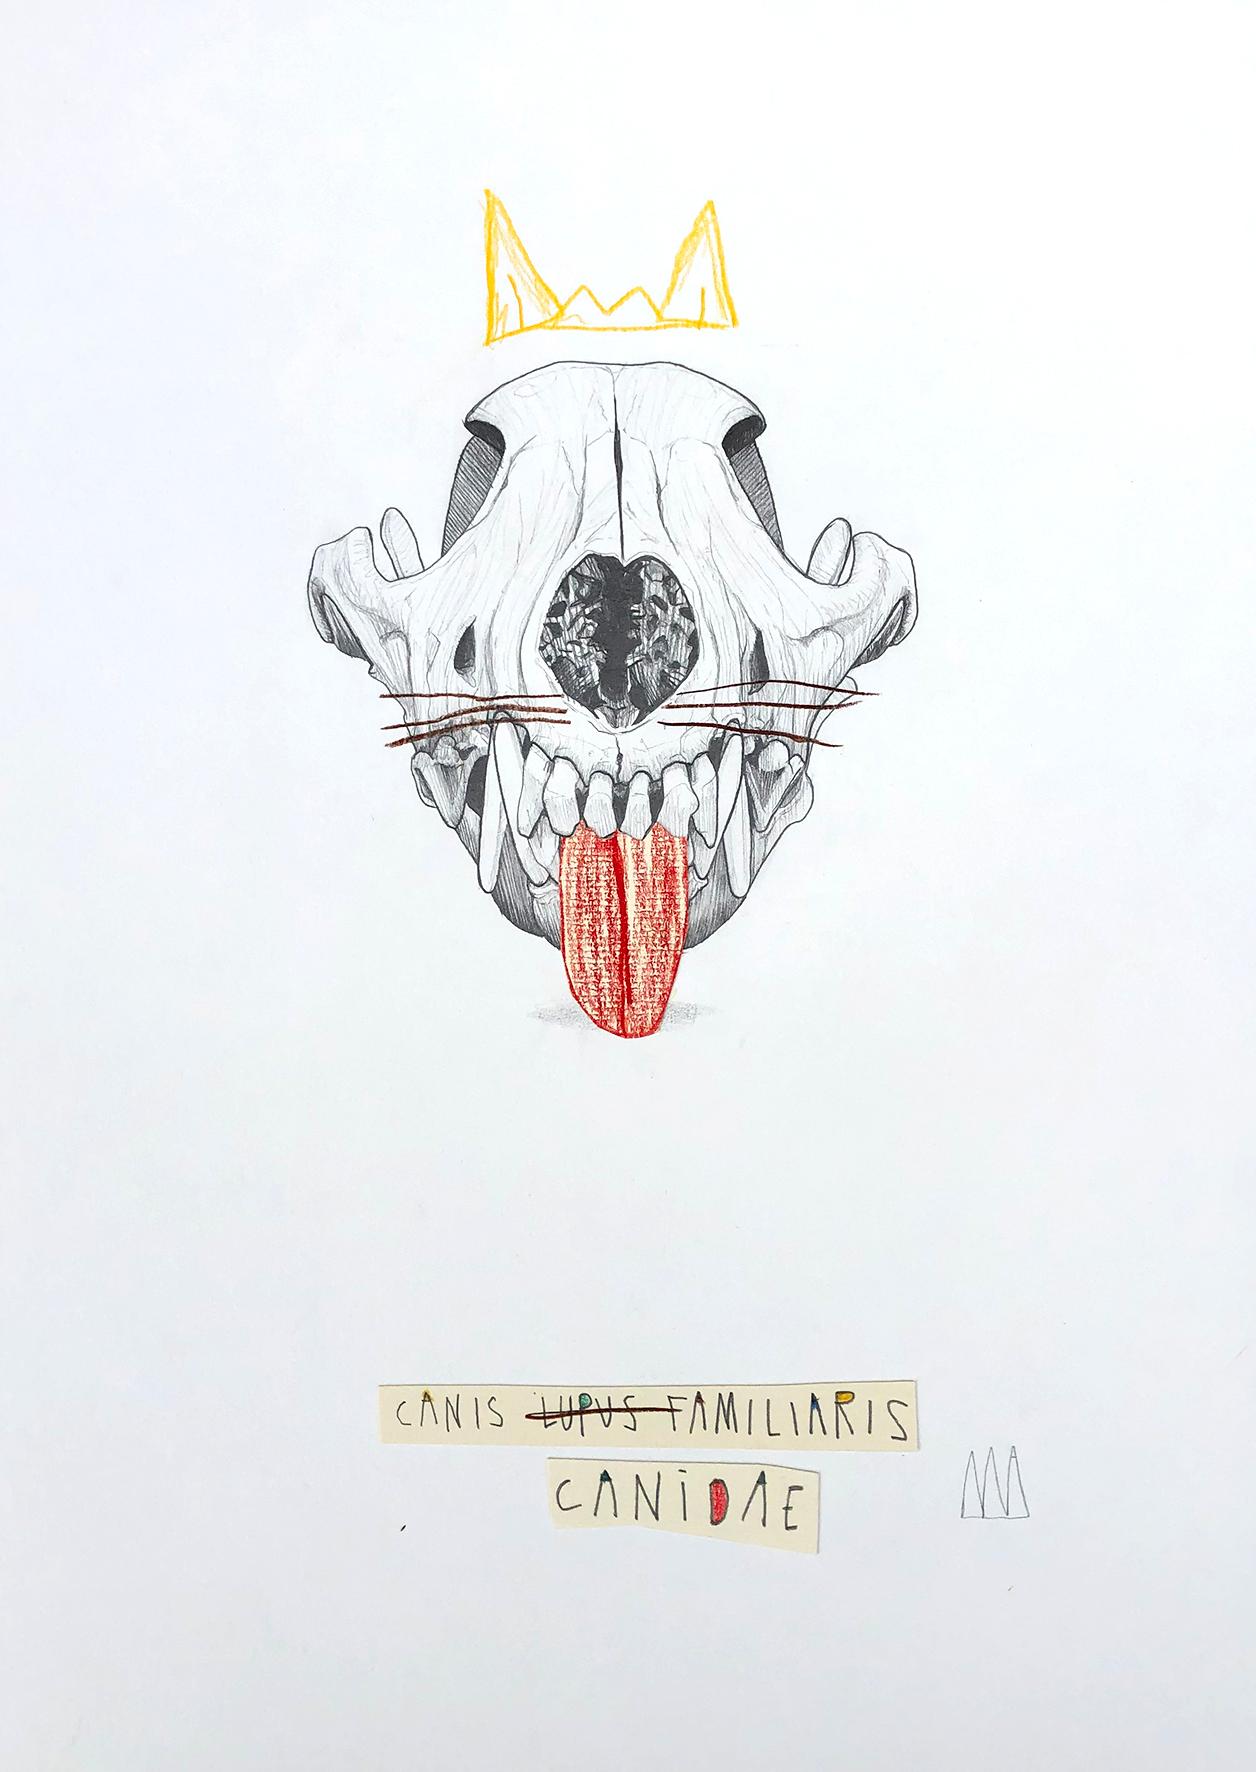 CANIS CANIDAE 
2020
Graphite, Couleurs et collage sur papier
SIgné au recto par l'artiste
42 x 29.7 cm
Prix de vente : 650 €